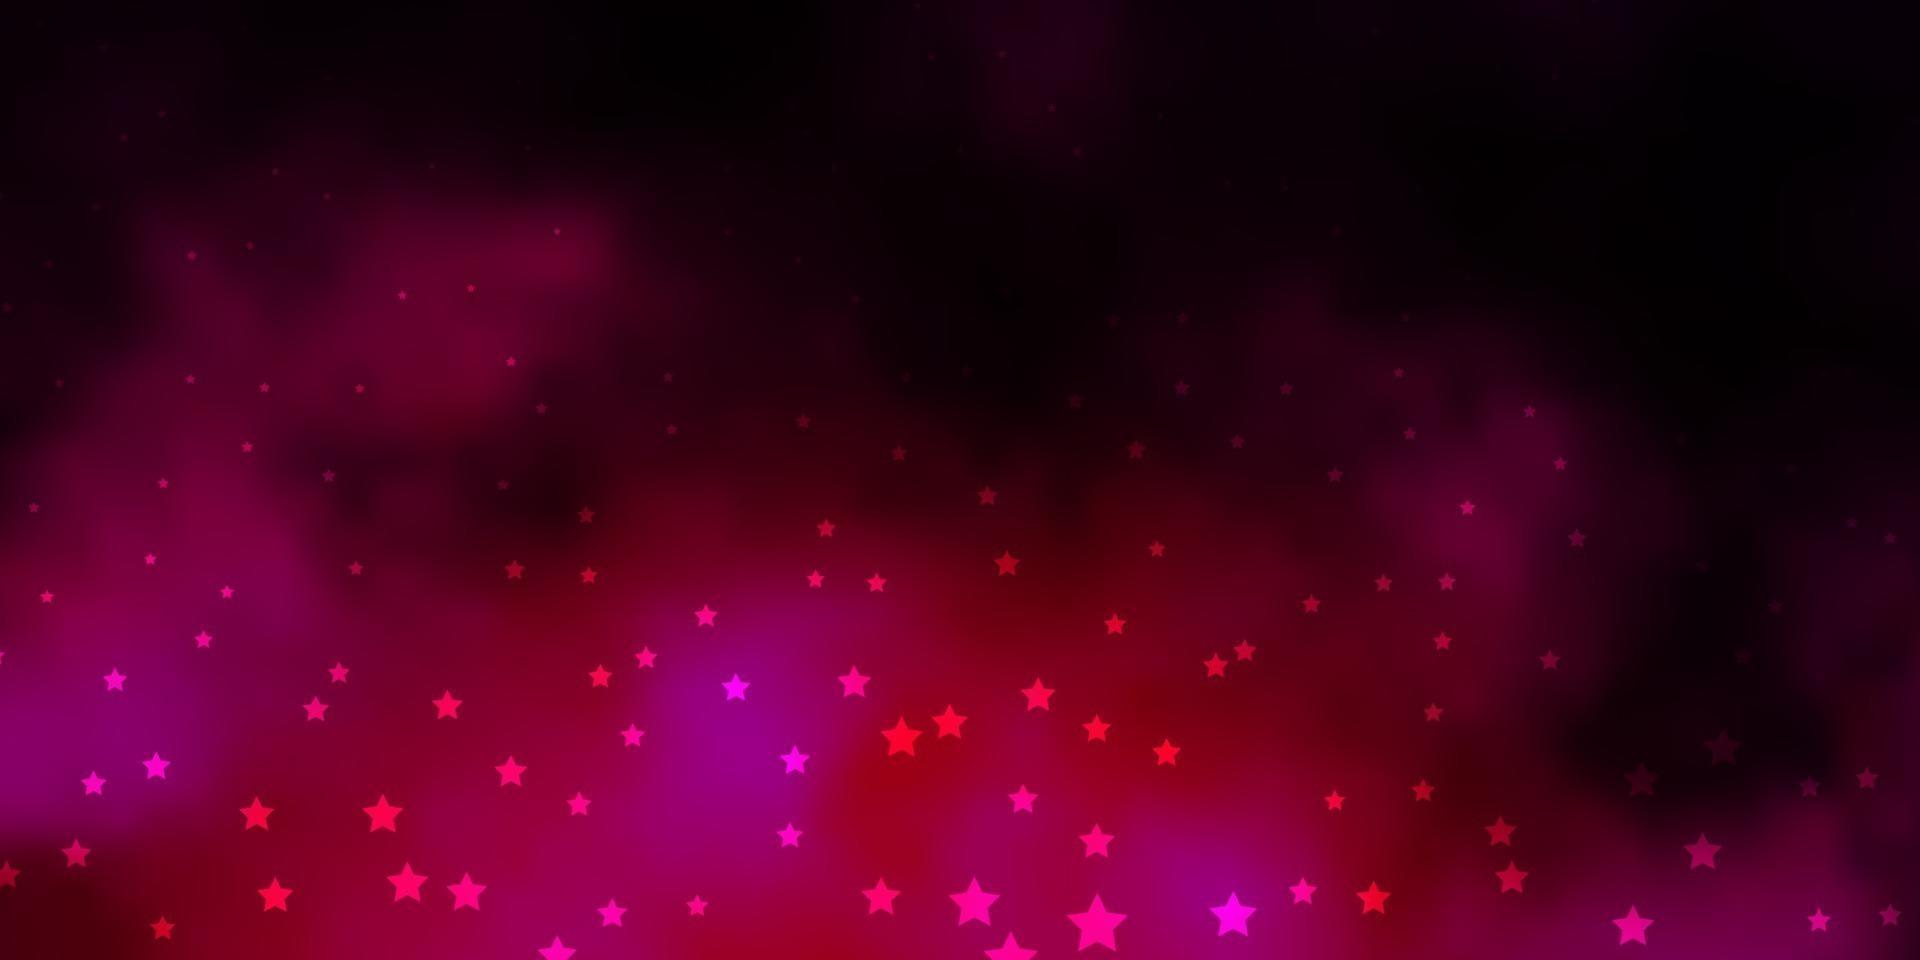 modello vettoriale rosa scuro con stelle al neon.